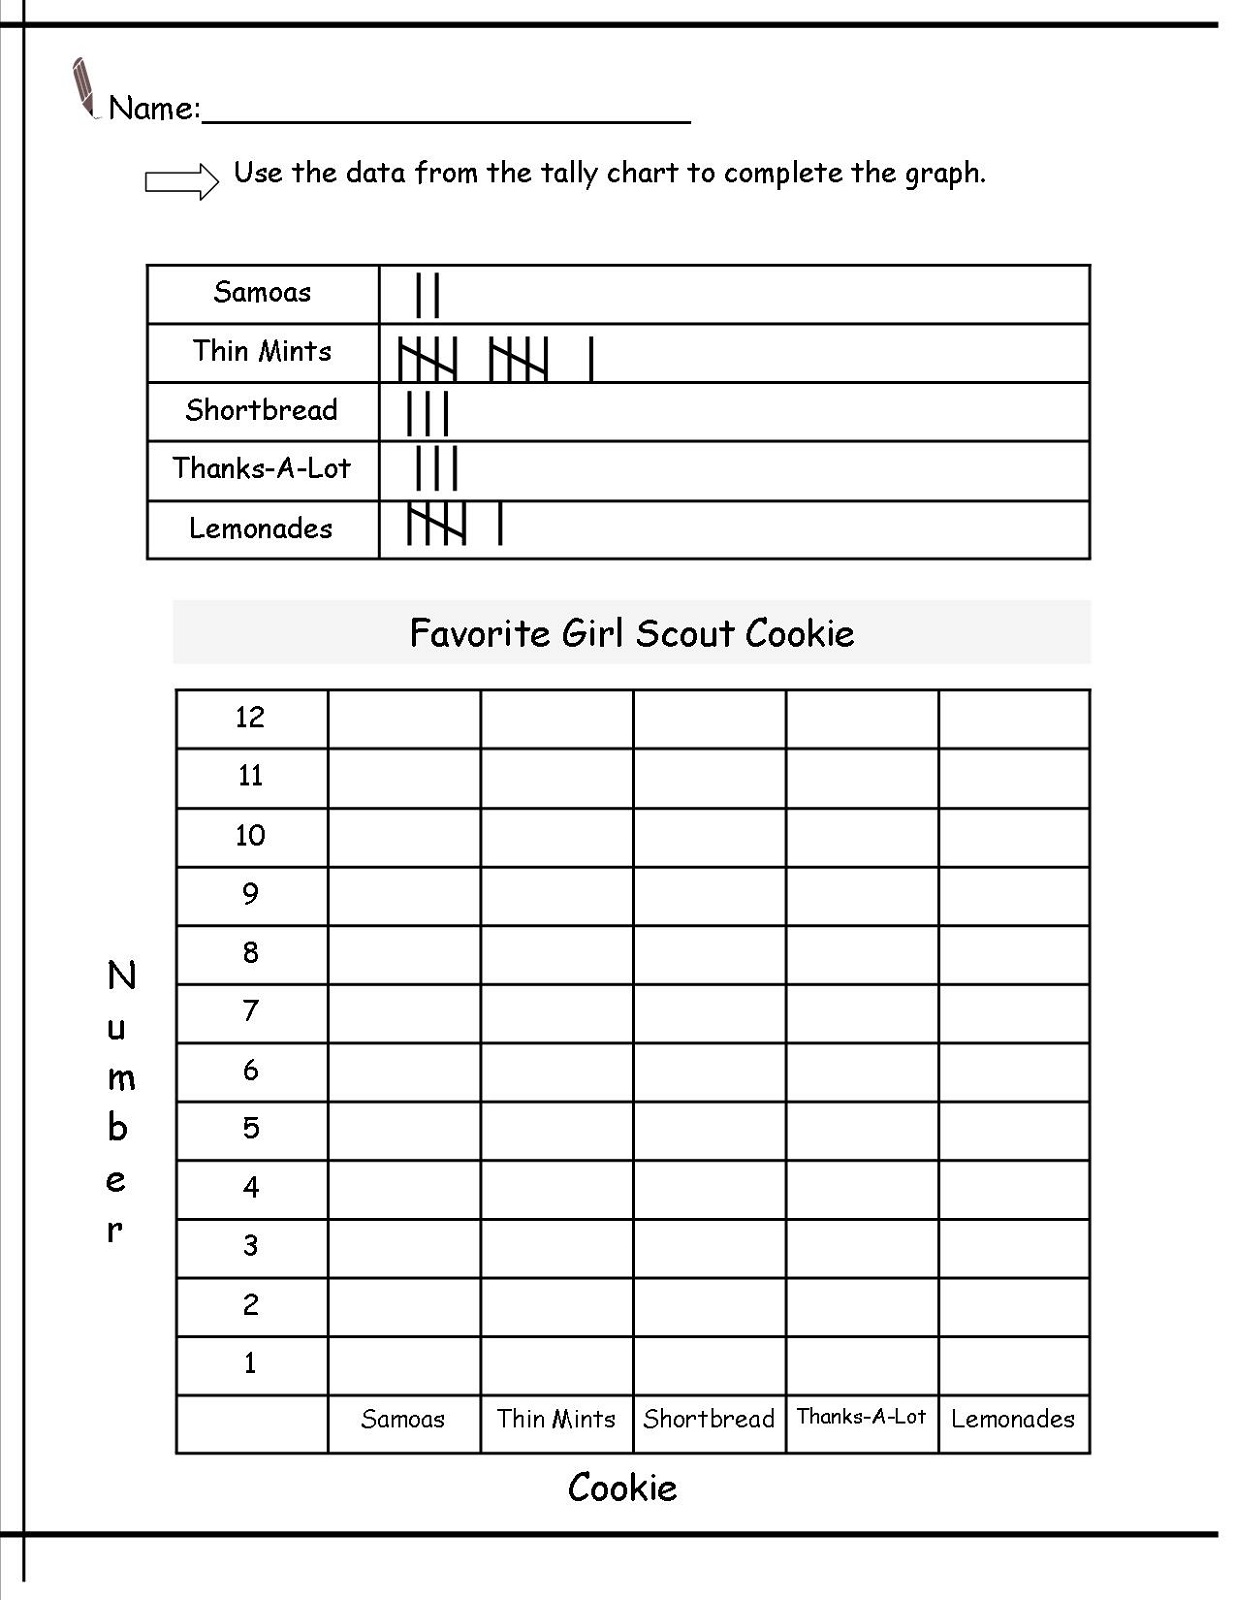 tally chart worksheet for girls